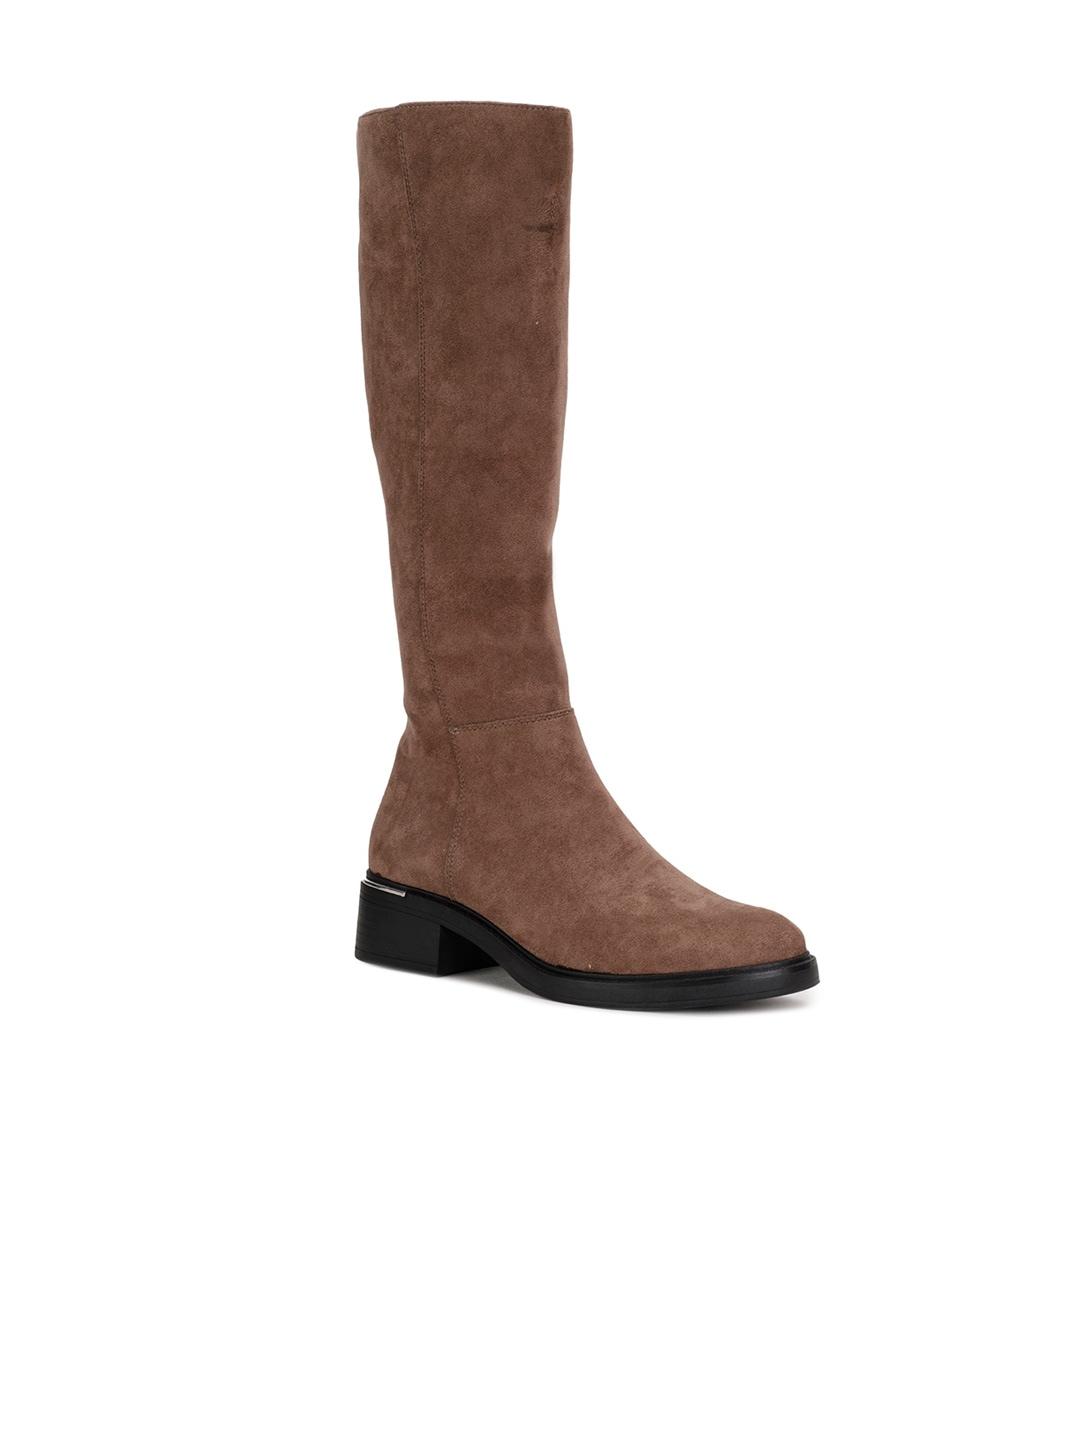 bata-women-tan-textured-knee-high-boots